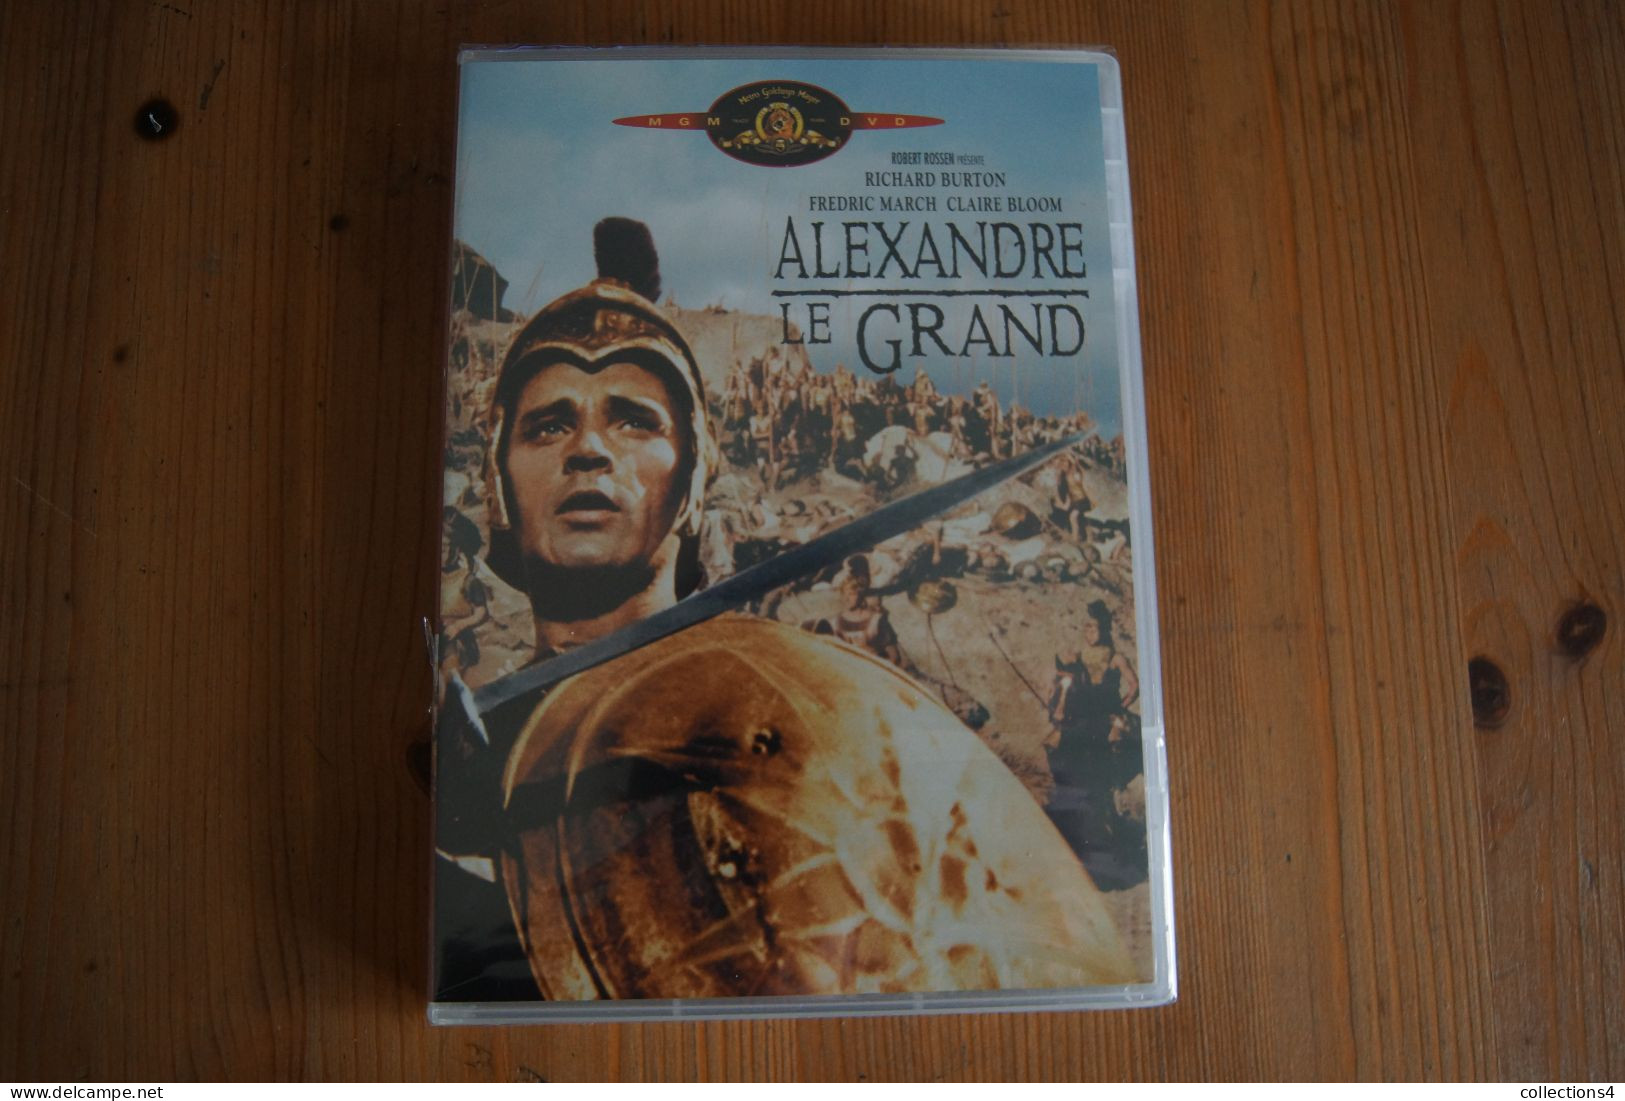 ALEXANDRE LE GRAND RICHARD BURTON F MARCH CLAIRE BLOOM  DVD NEUF SCELLE DU FILM DE ROBERT ROSSEN 1956 - Action, Adventure